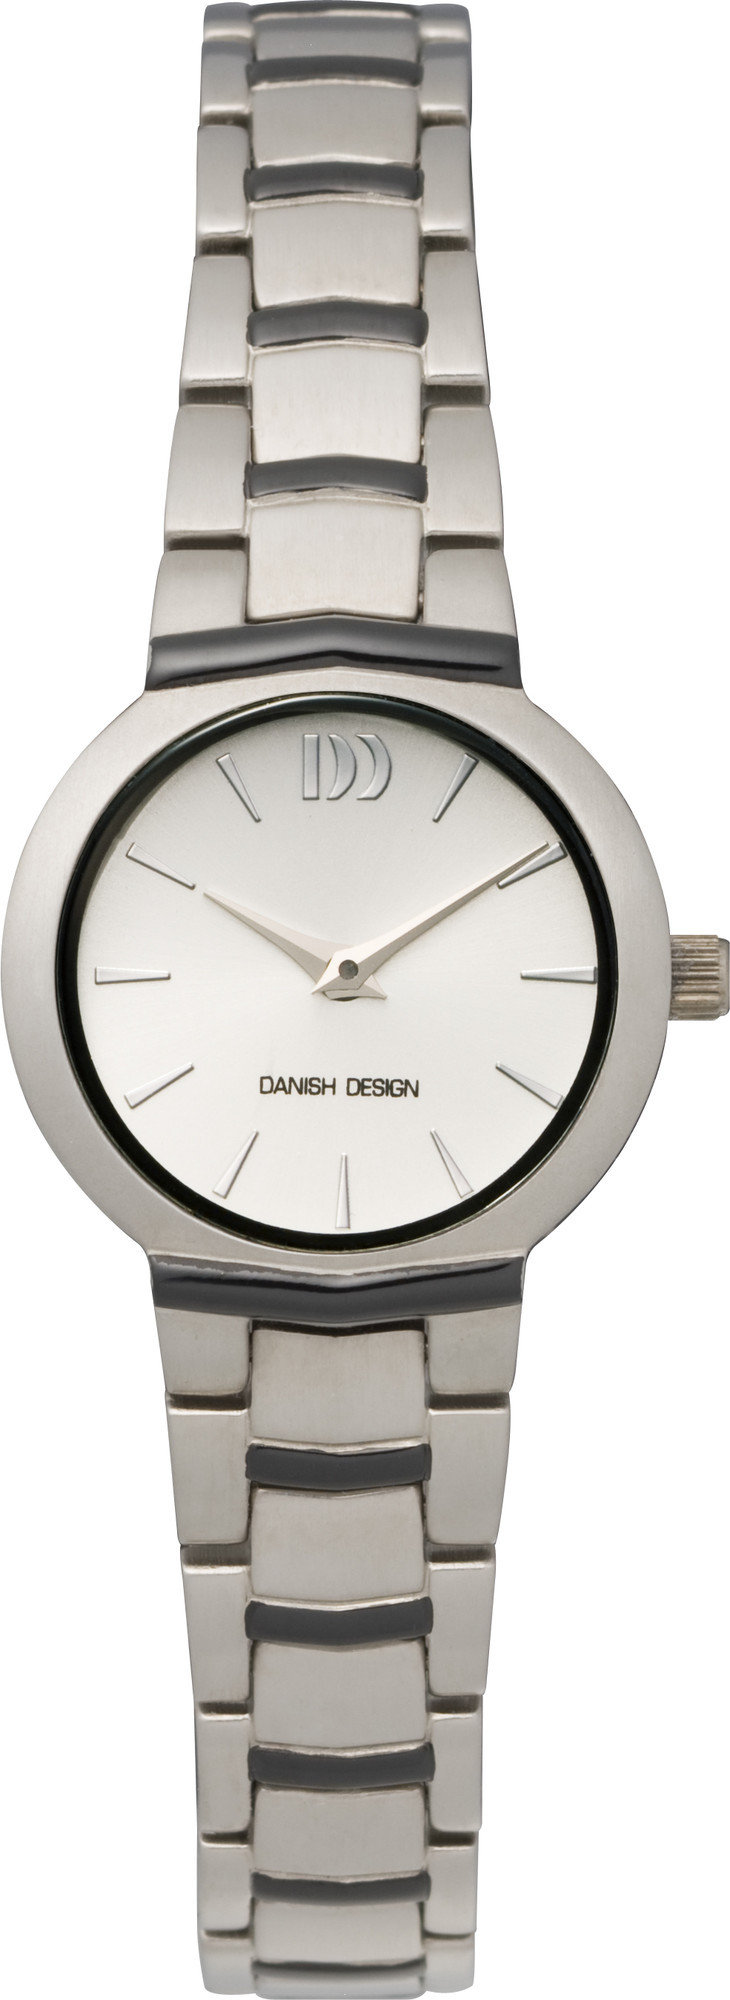 Danish Design Horloge 23 mm Titanium IV64Q775 1